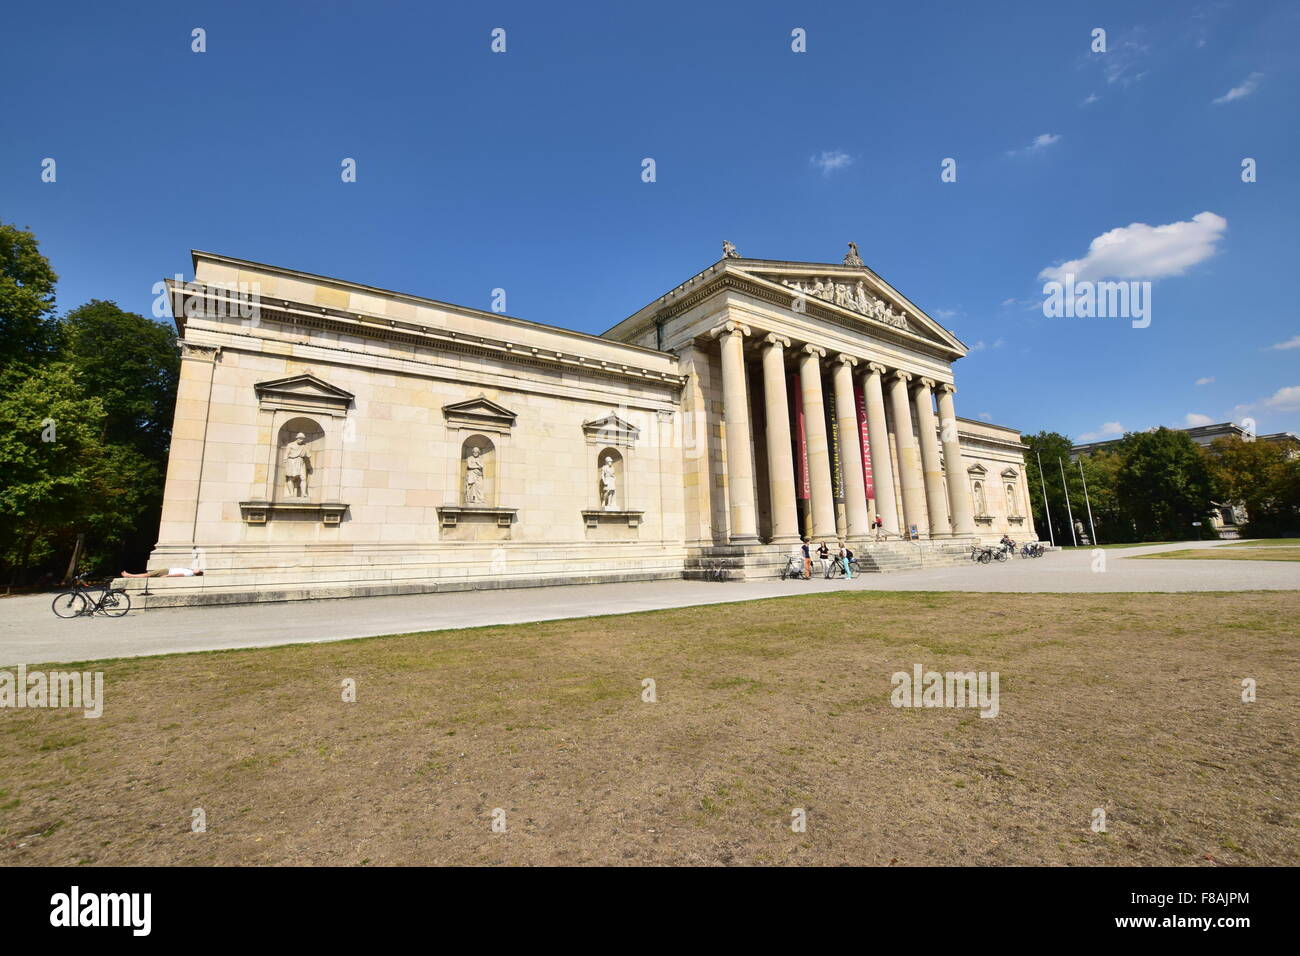 Le musée d'art classique Glyptothèque de Munich, Allemagne Banque D'Images